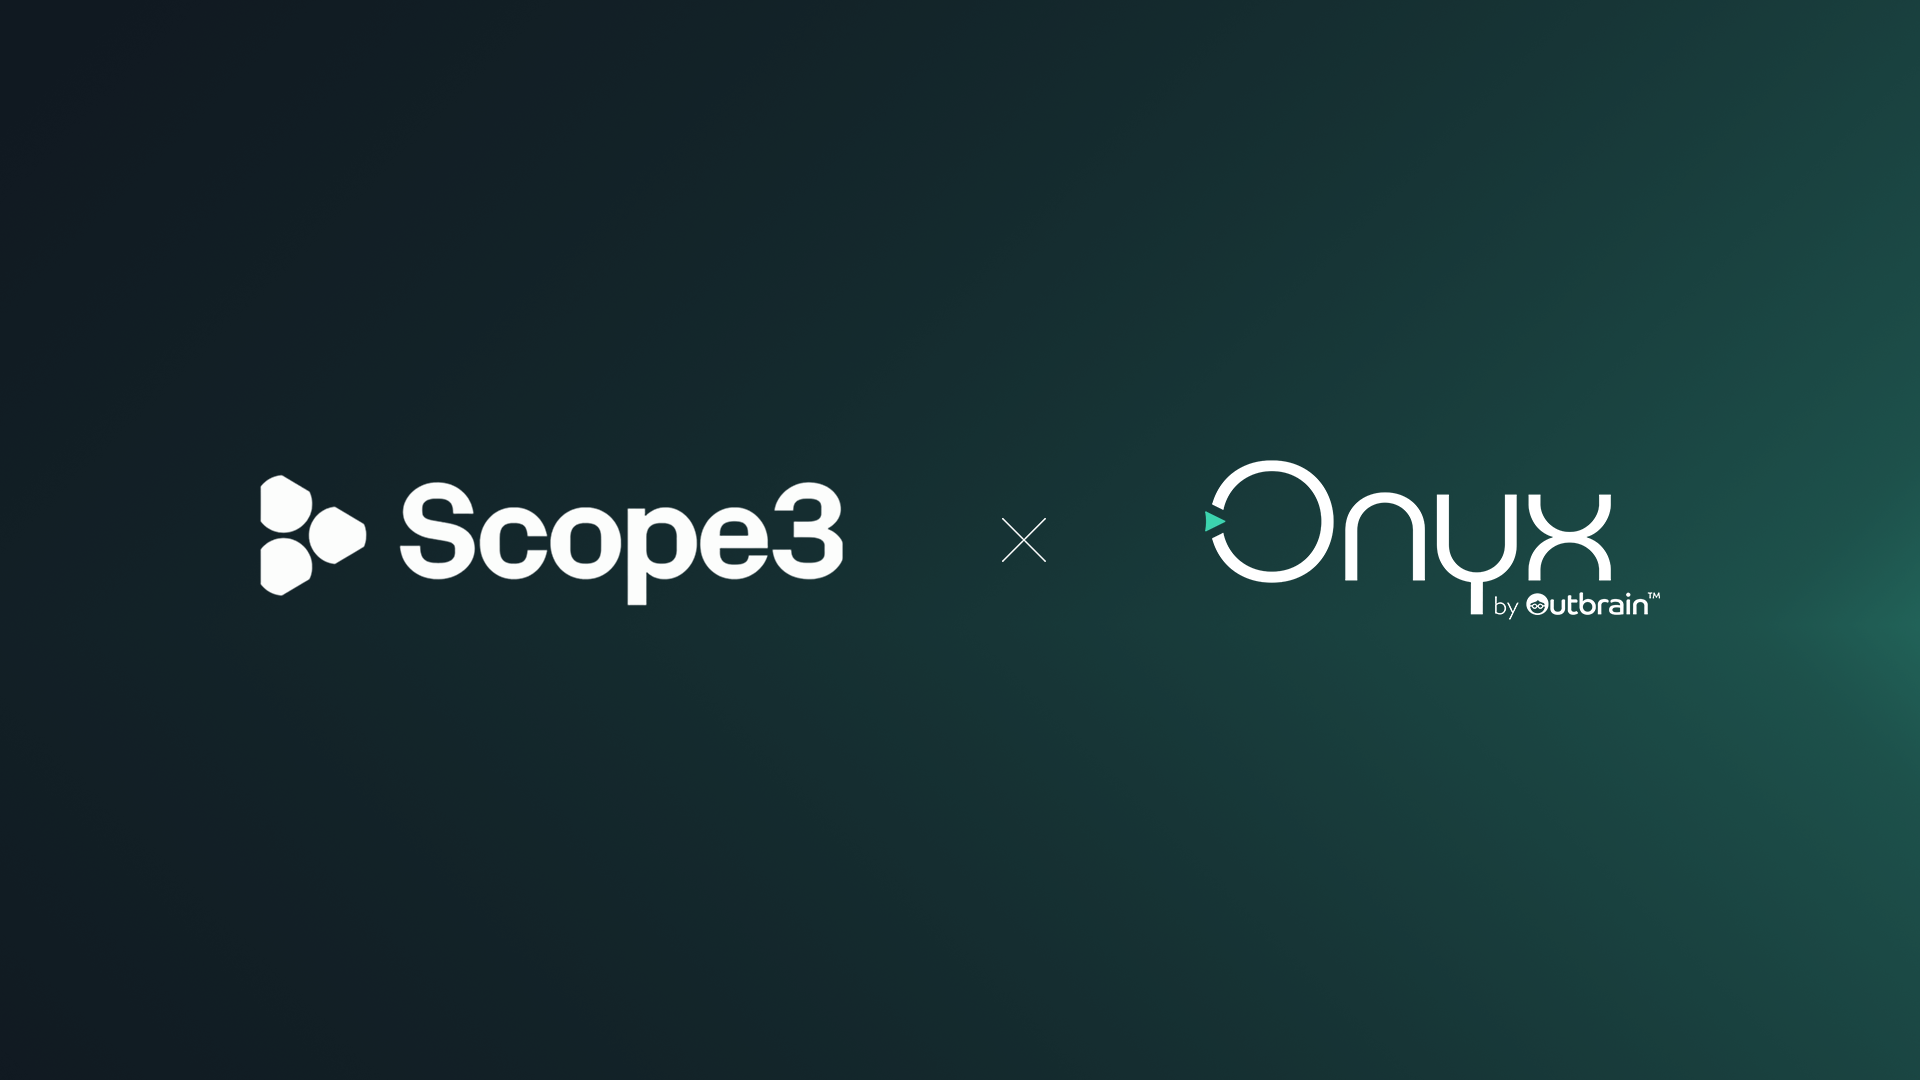 Outbrain integriert Scope3-Daten in OnyxGreen, einer nachhaltigeren Lösung für Brand Marketer